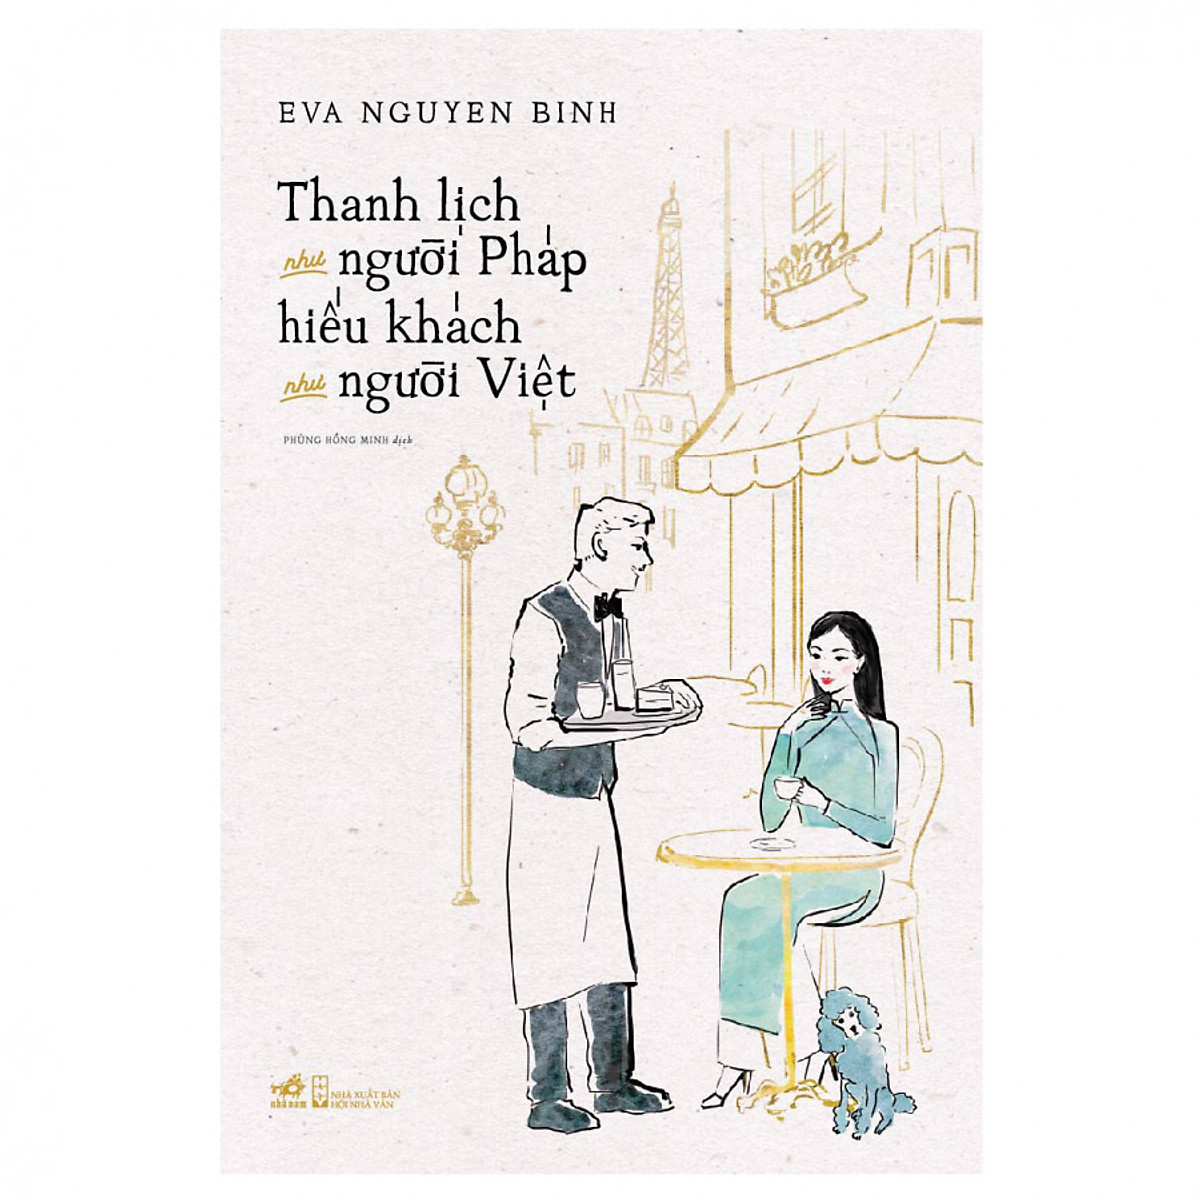 Combo 2 cuốn sách: Thanh lịch như người Pháp, hiếu khách như người Việt + Làm sao nói về những cuốn sách chưa đọc?